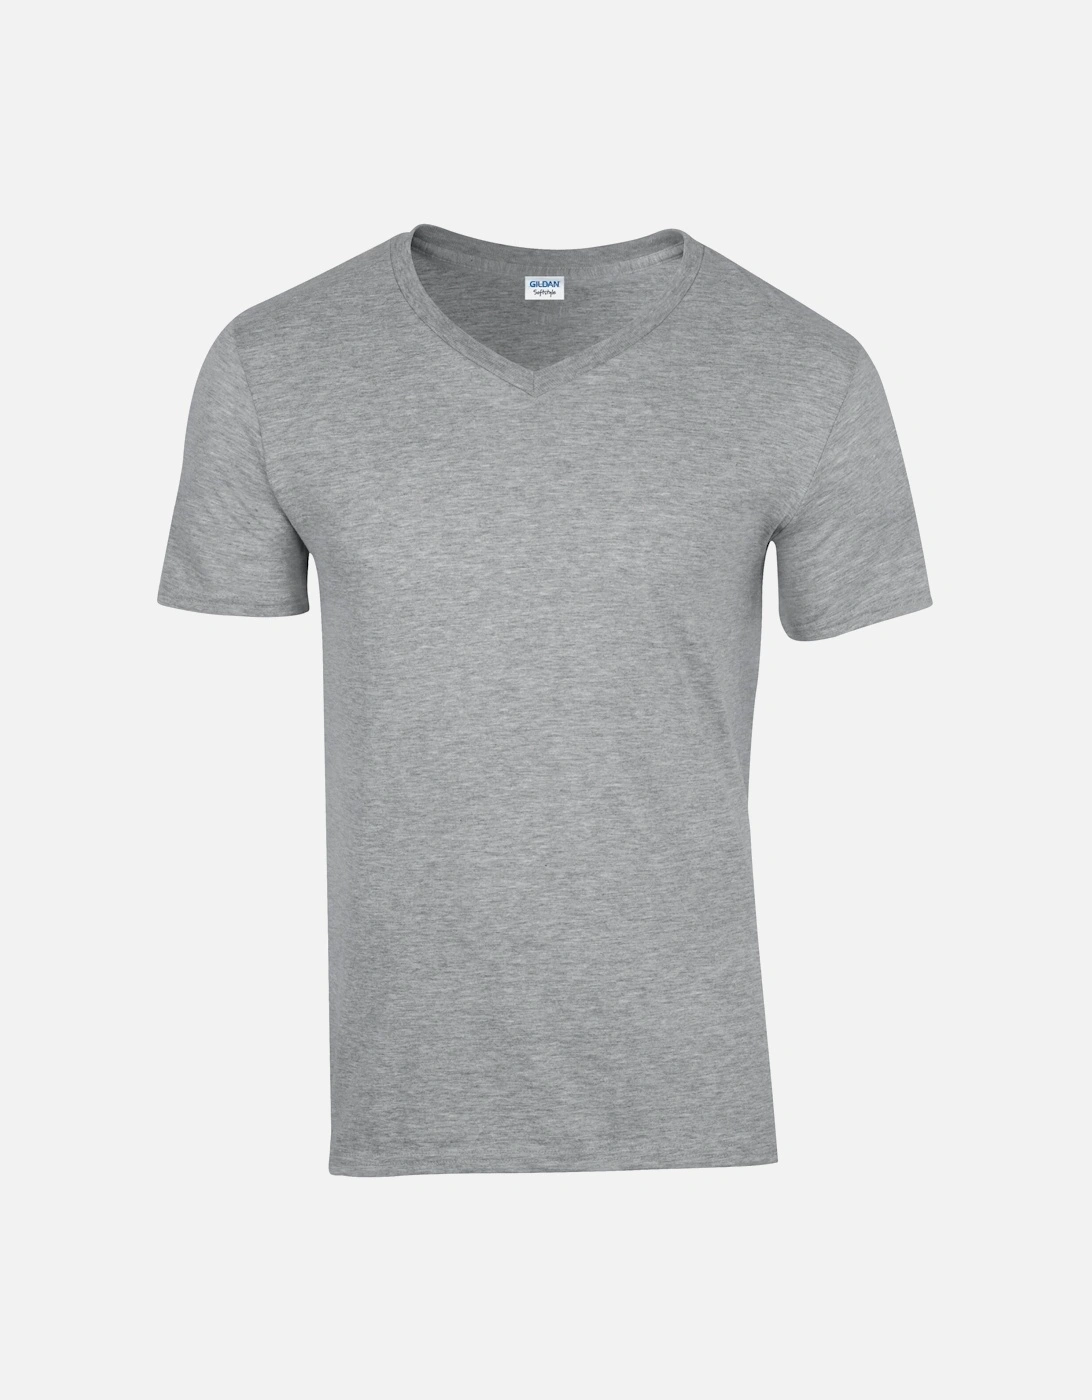 Unisex Adult Softstyle V Neck T-Shirt, 4 of 3